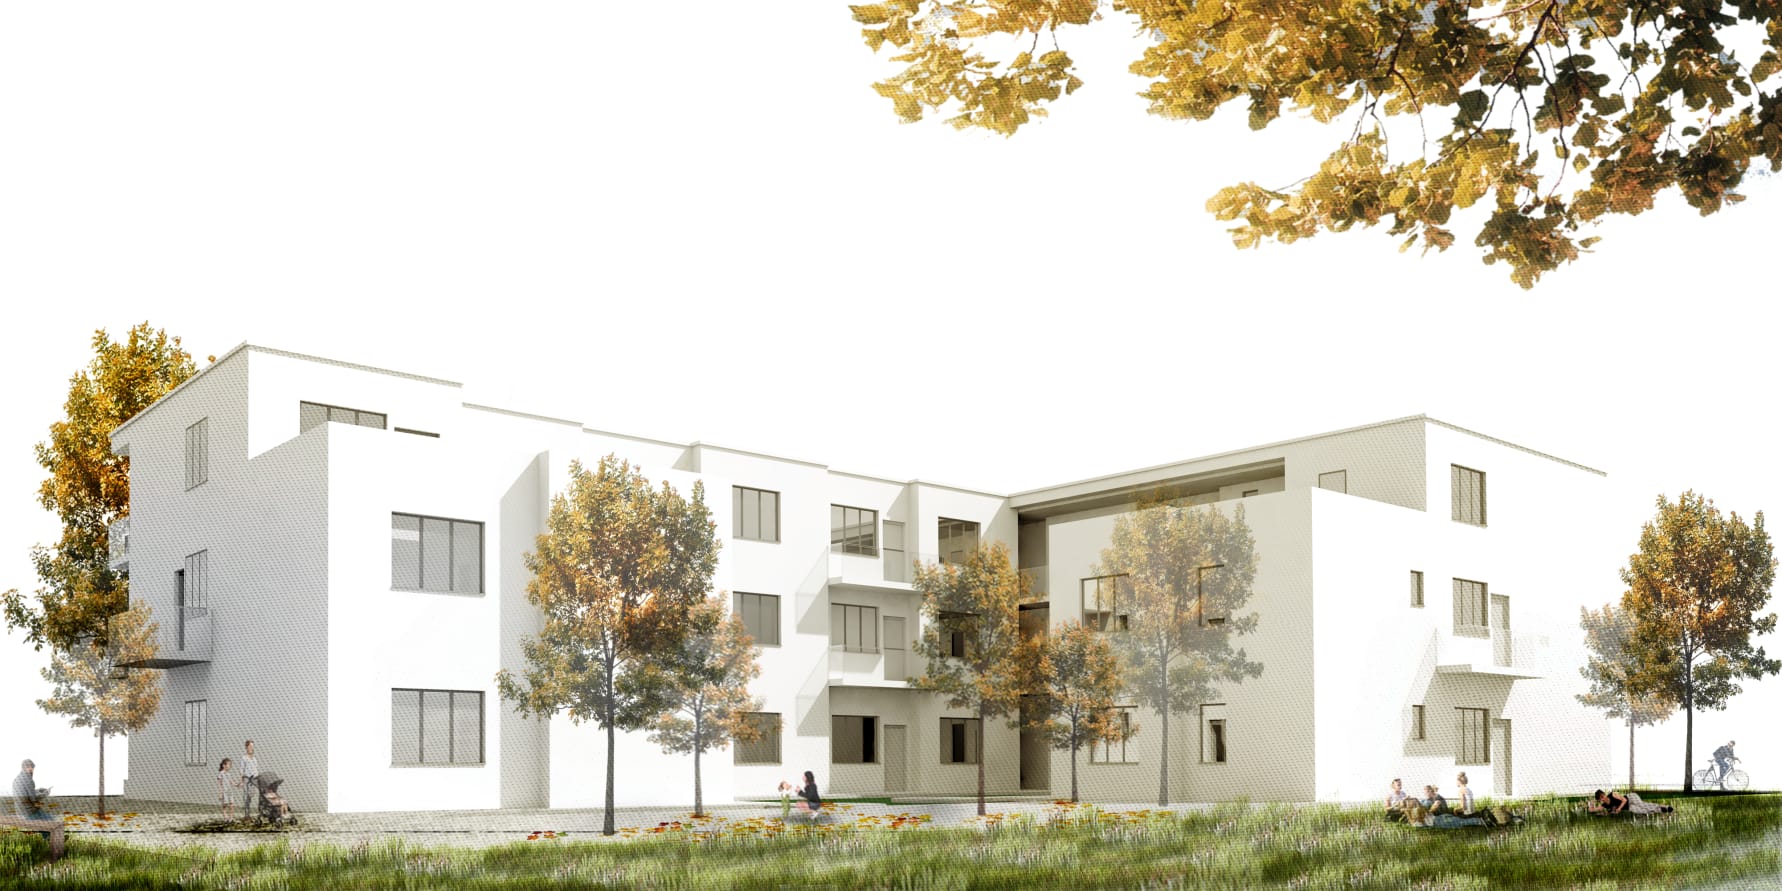 Machbarkeitsstudie für bezahlbaren Wohnraum in Großpösna vorgestellt